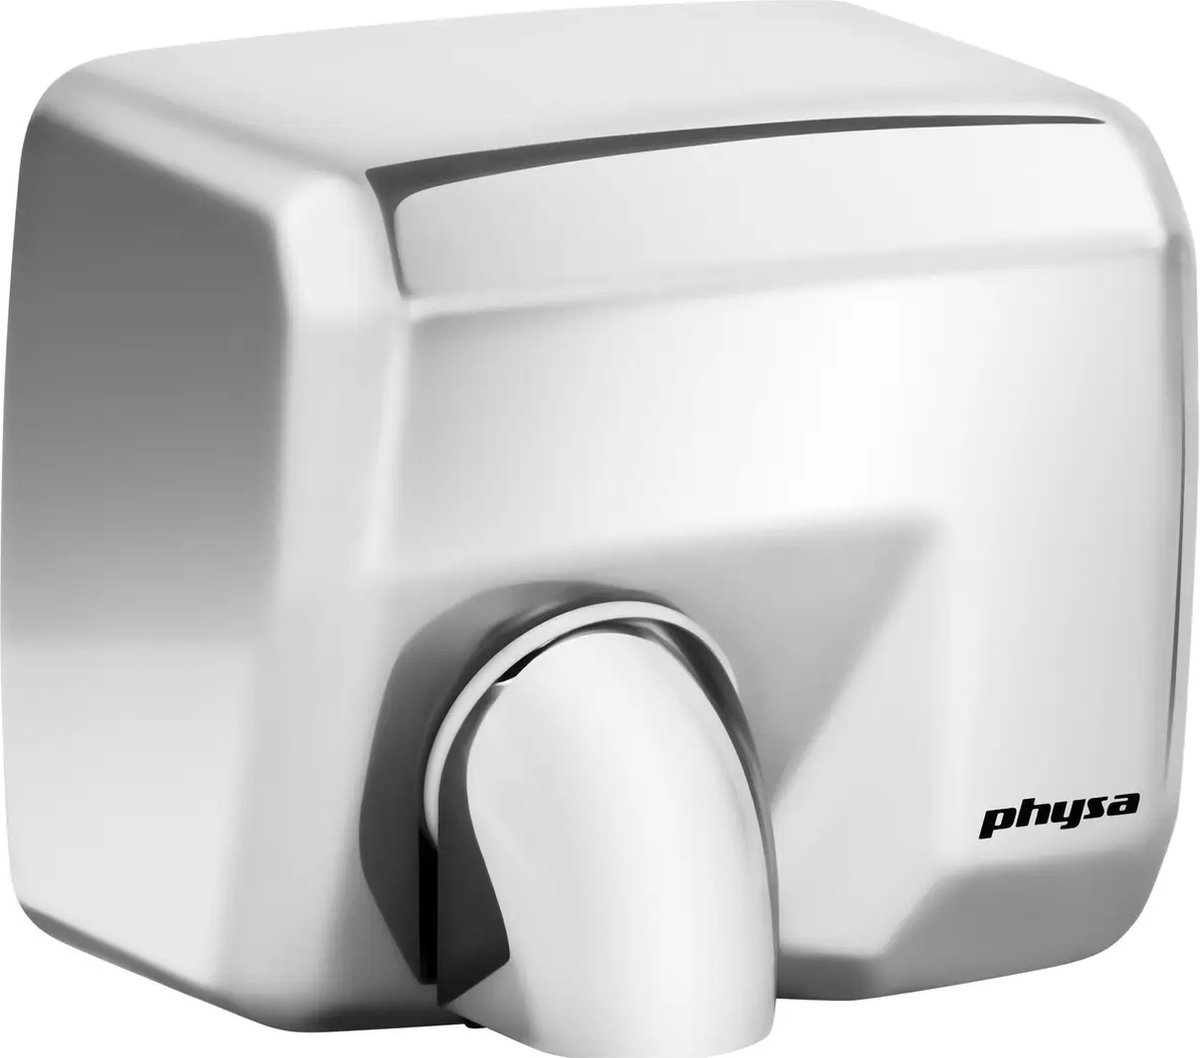 Physa Toilet Handdroger Zilver